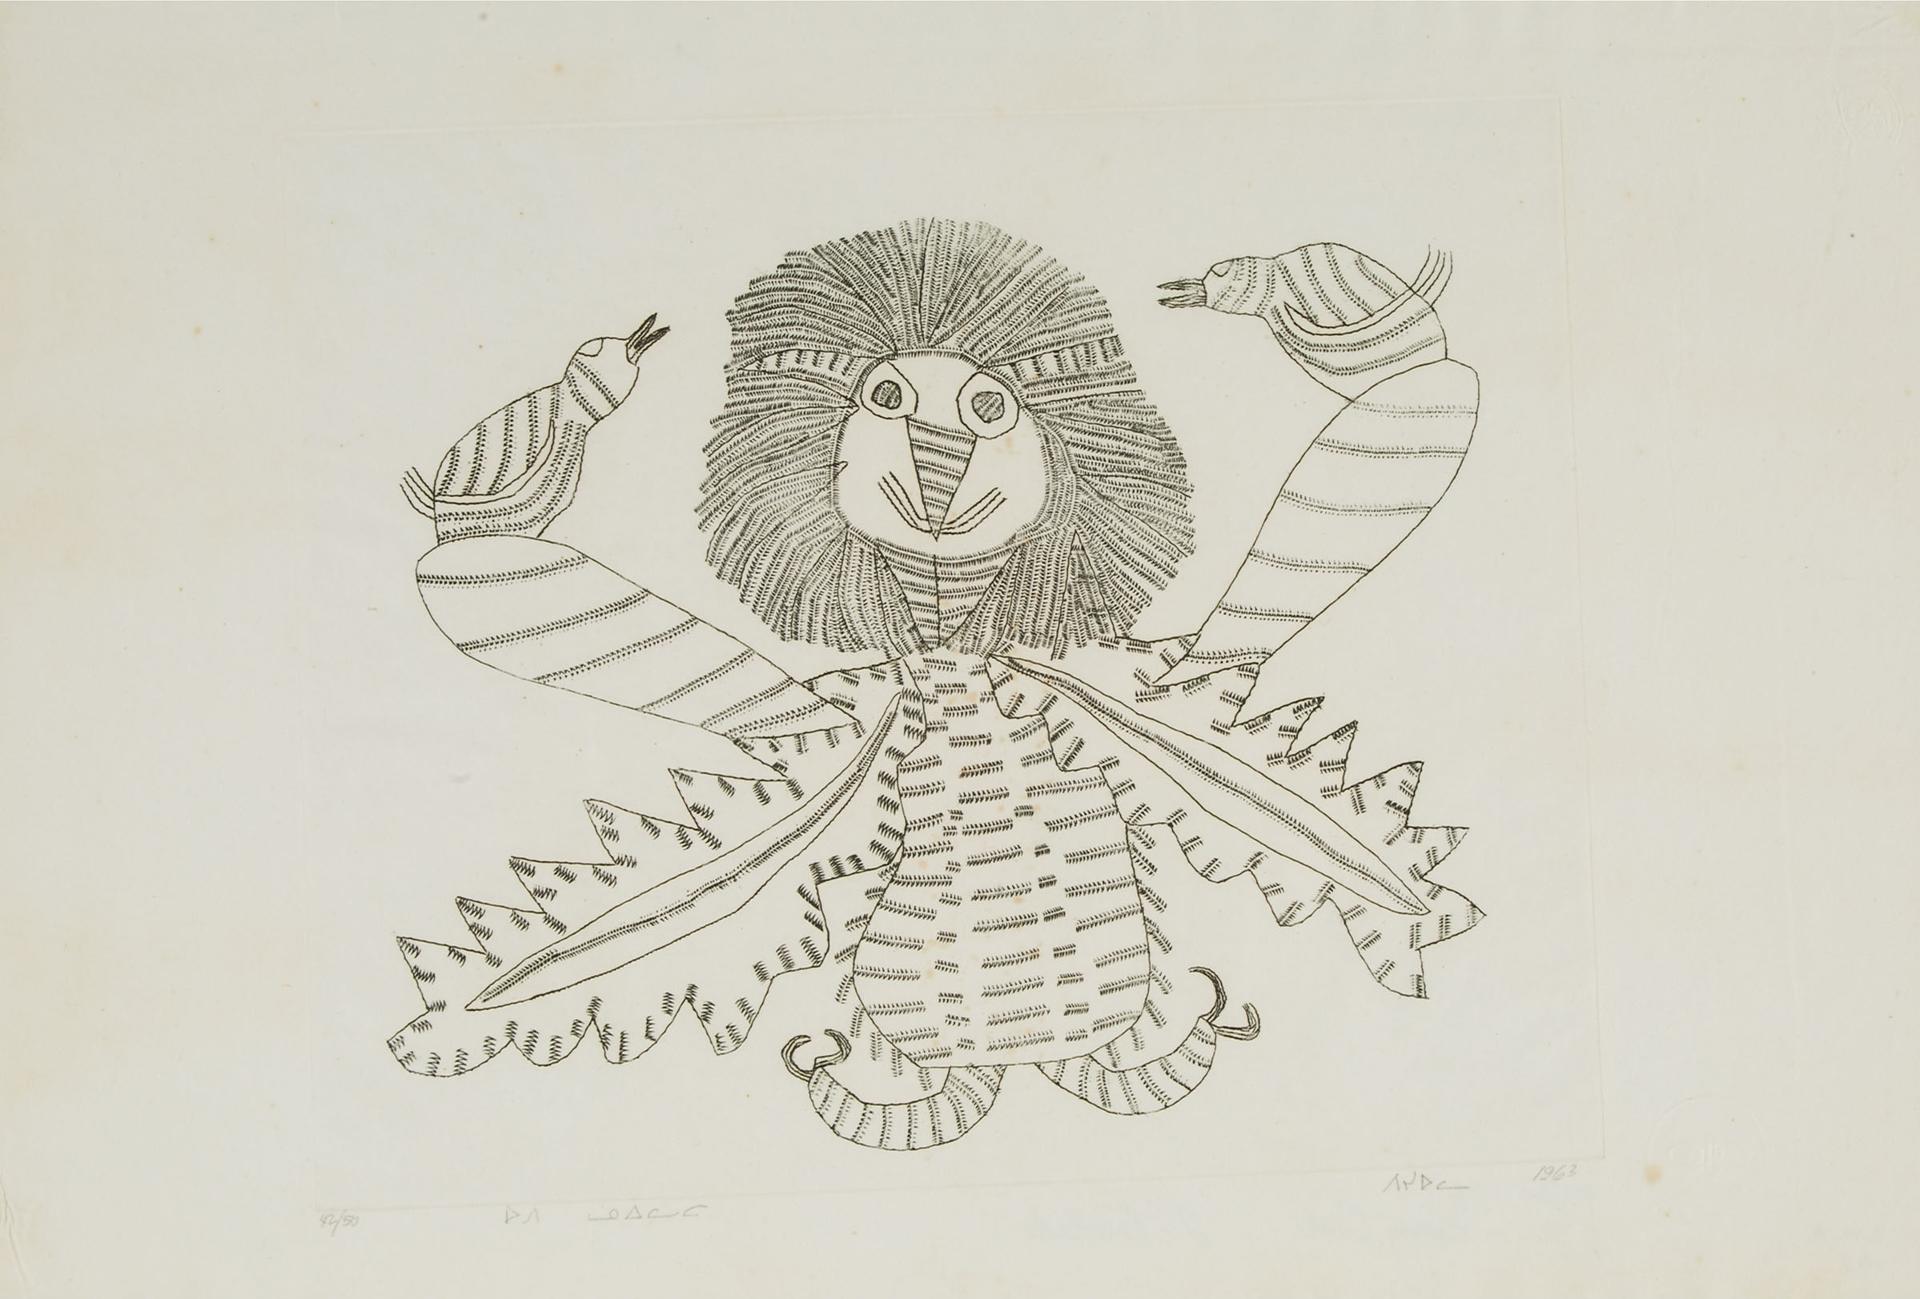 Pitseolak Ashoona (1904-1983) - Furry Owl